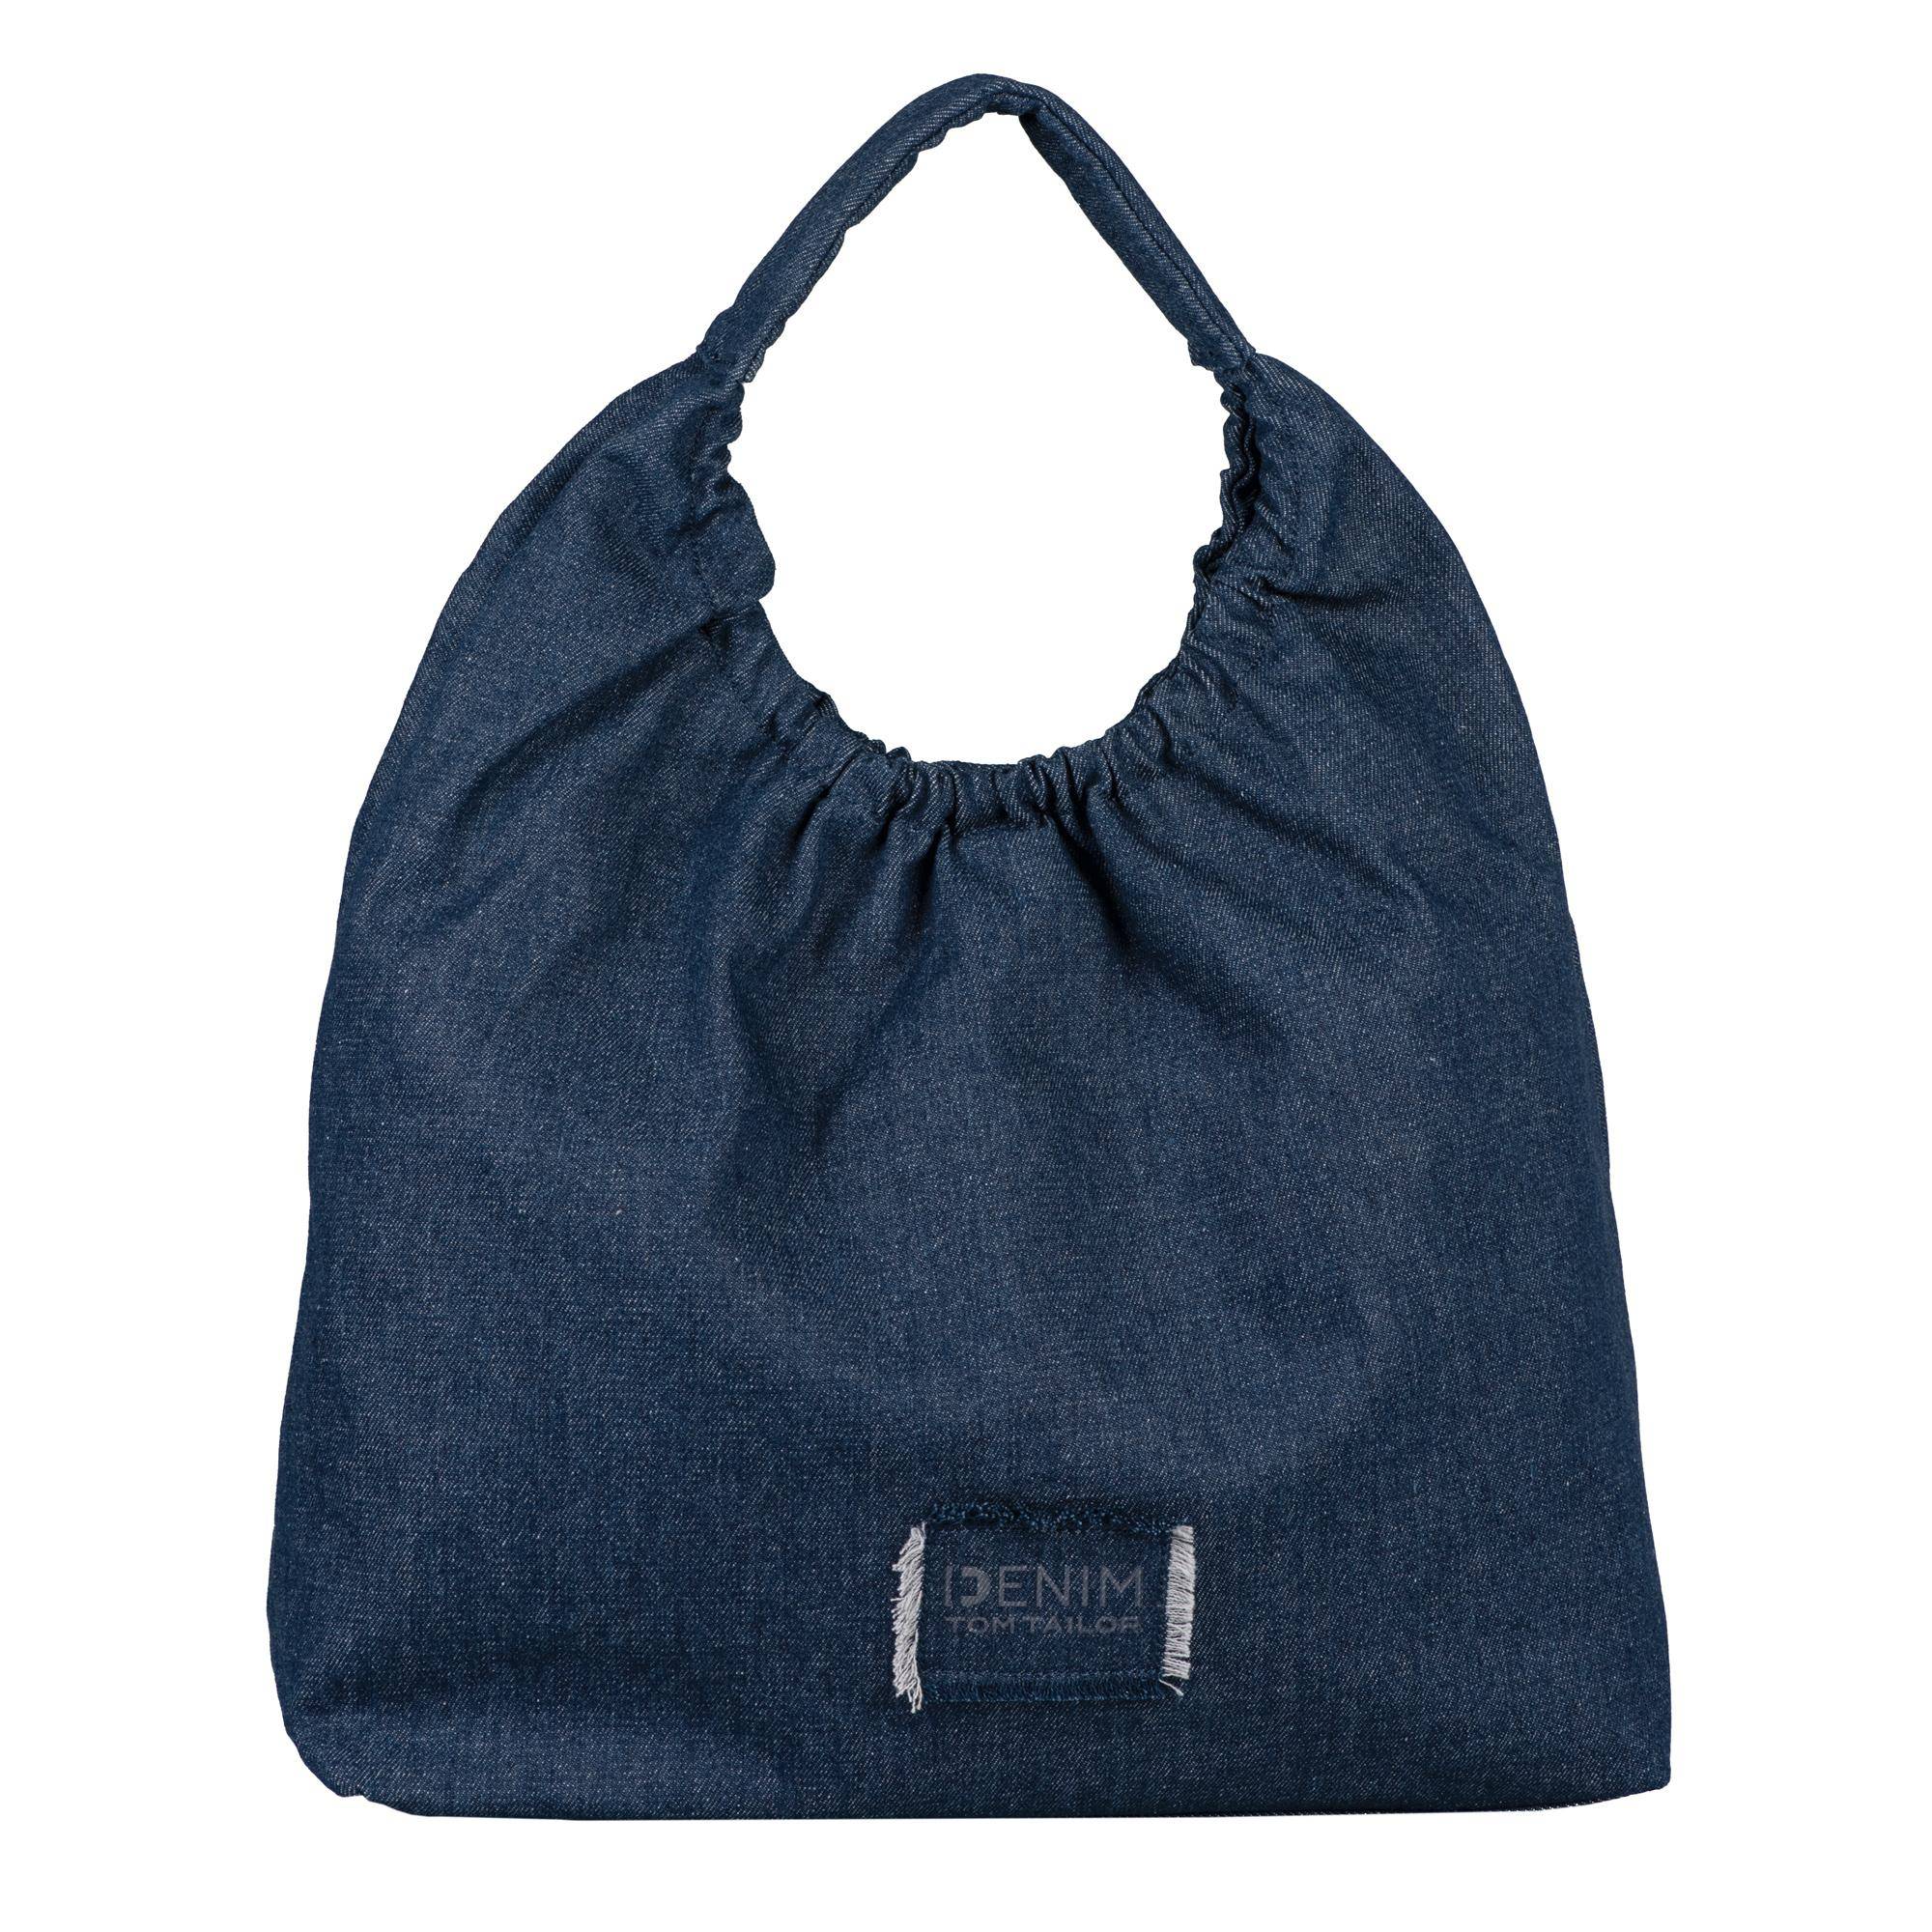 Женская сумка Tom Tailor, синяя, Tom Tailor Bags, Синий  - купить